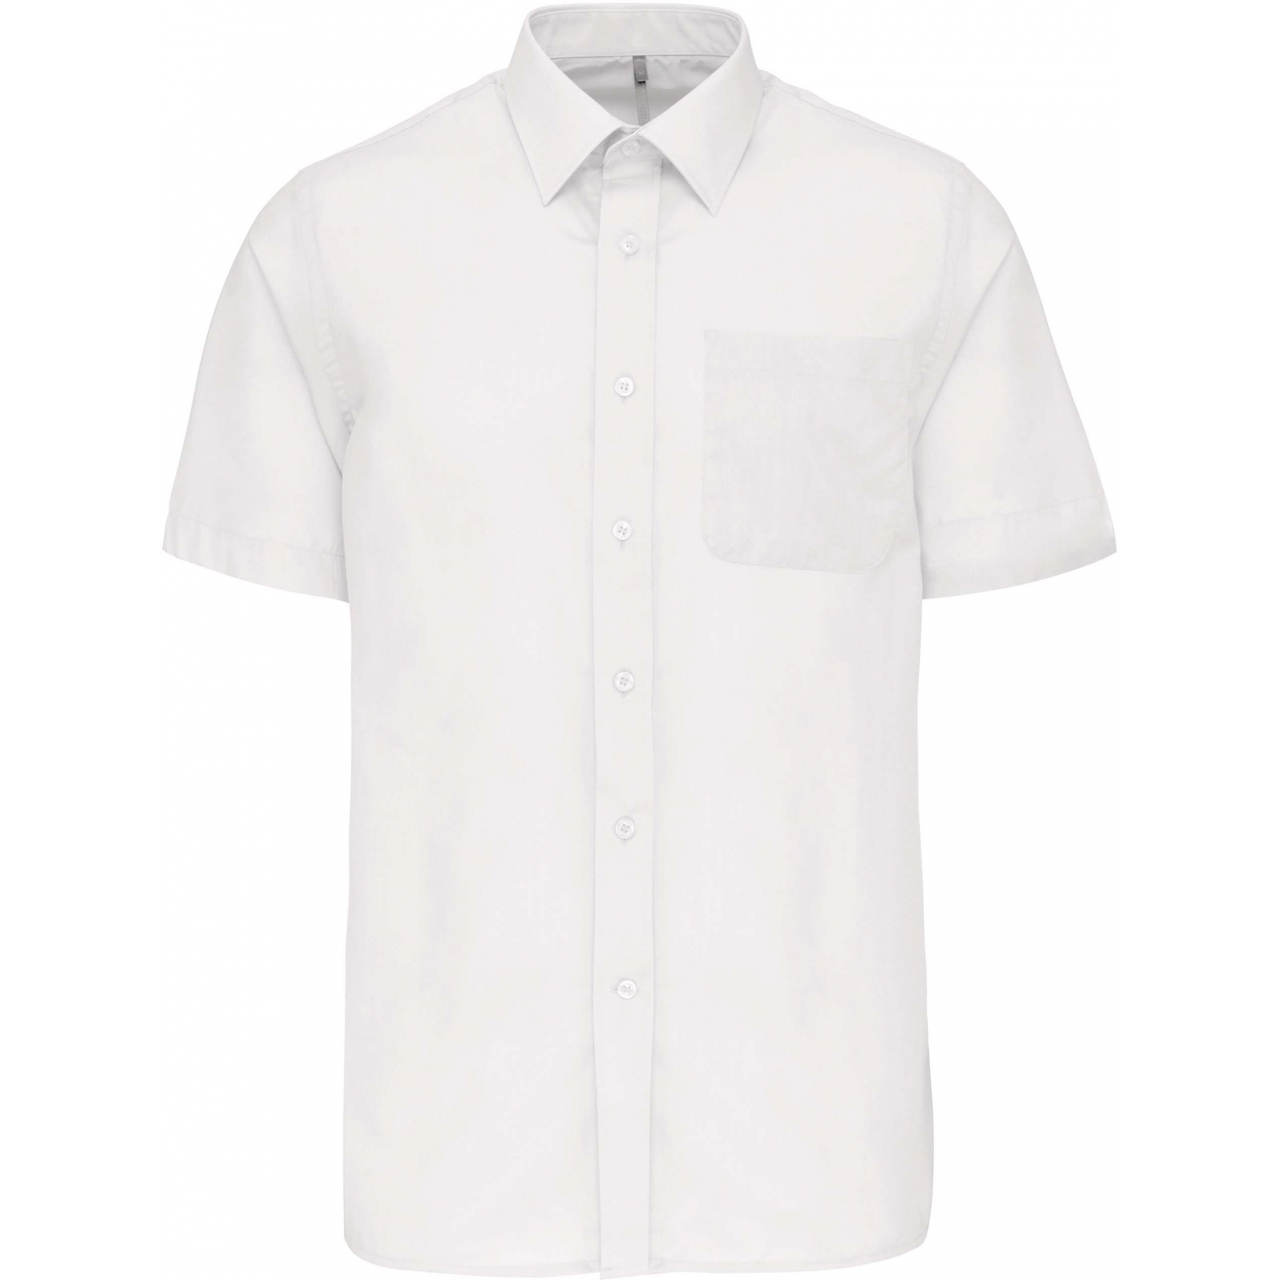 Pánská košile s krátkým rukávem Kariban ACE - bílá, S